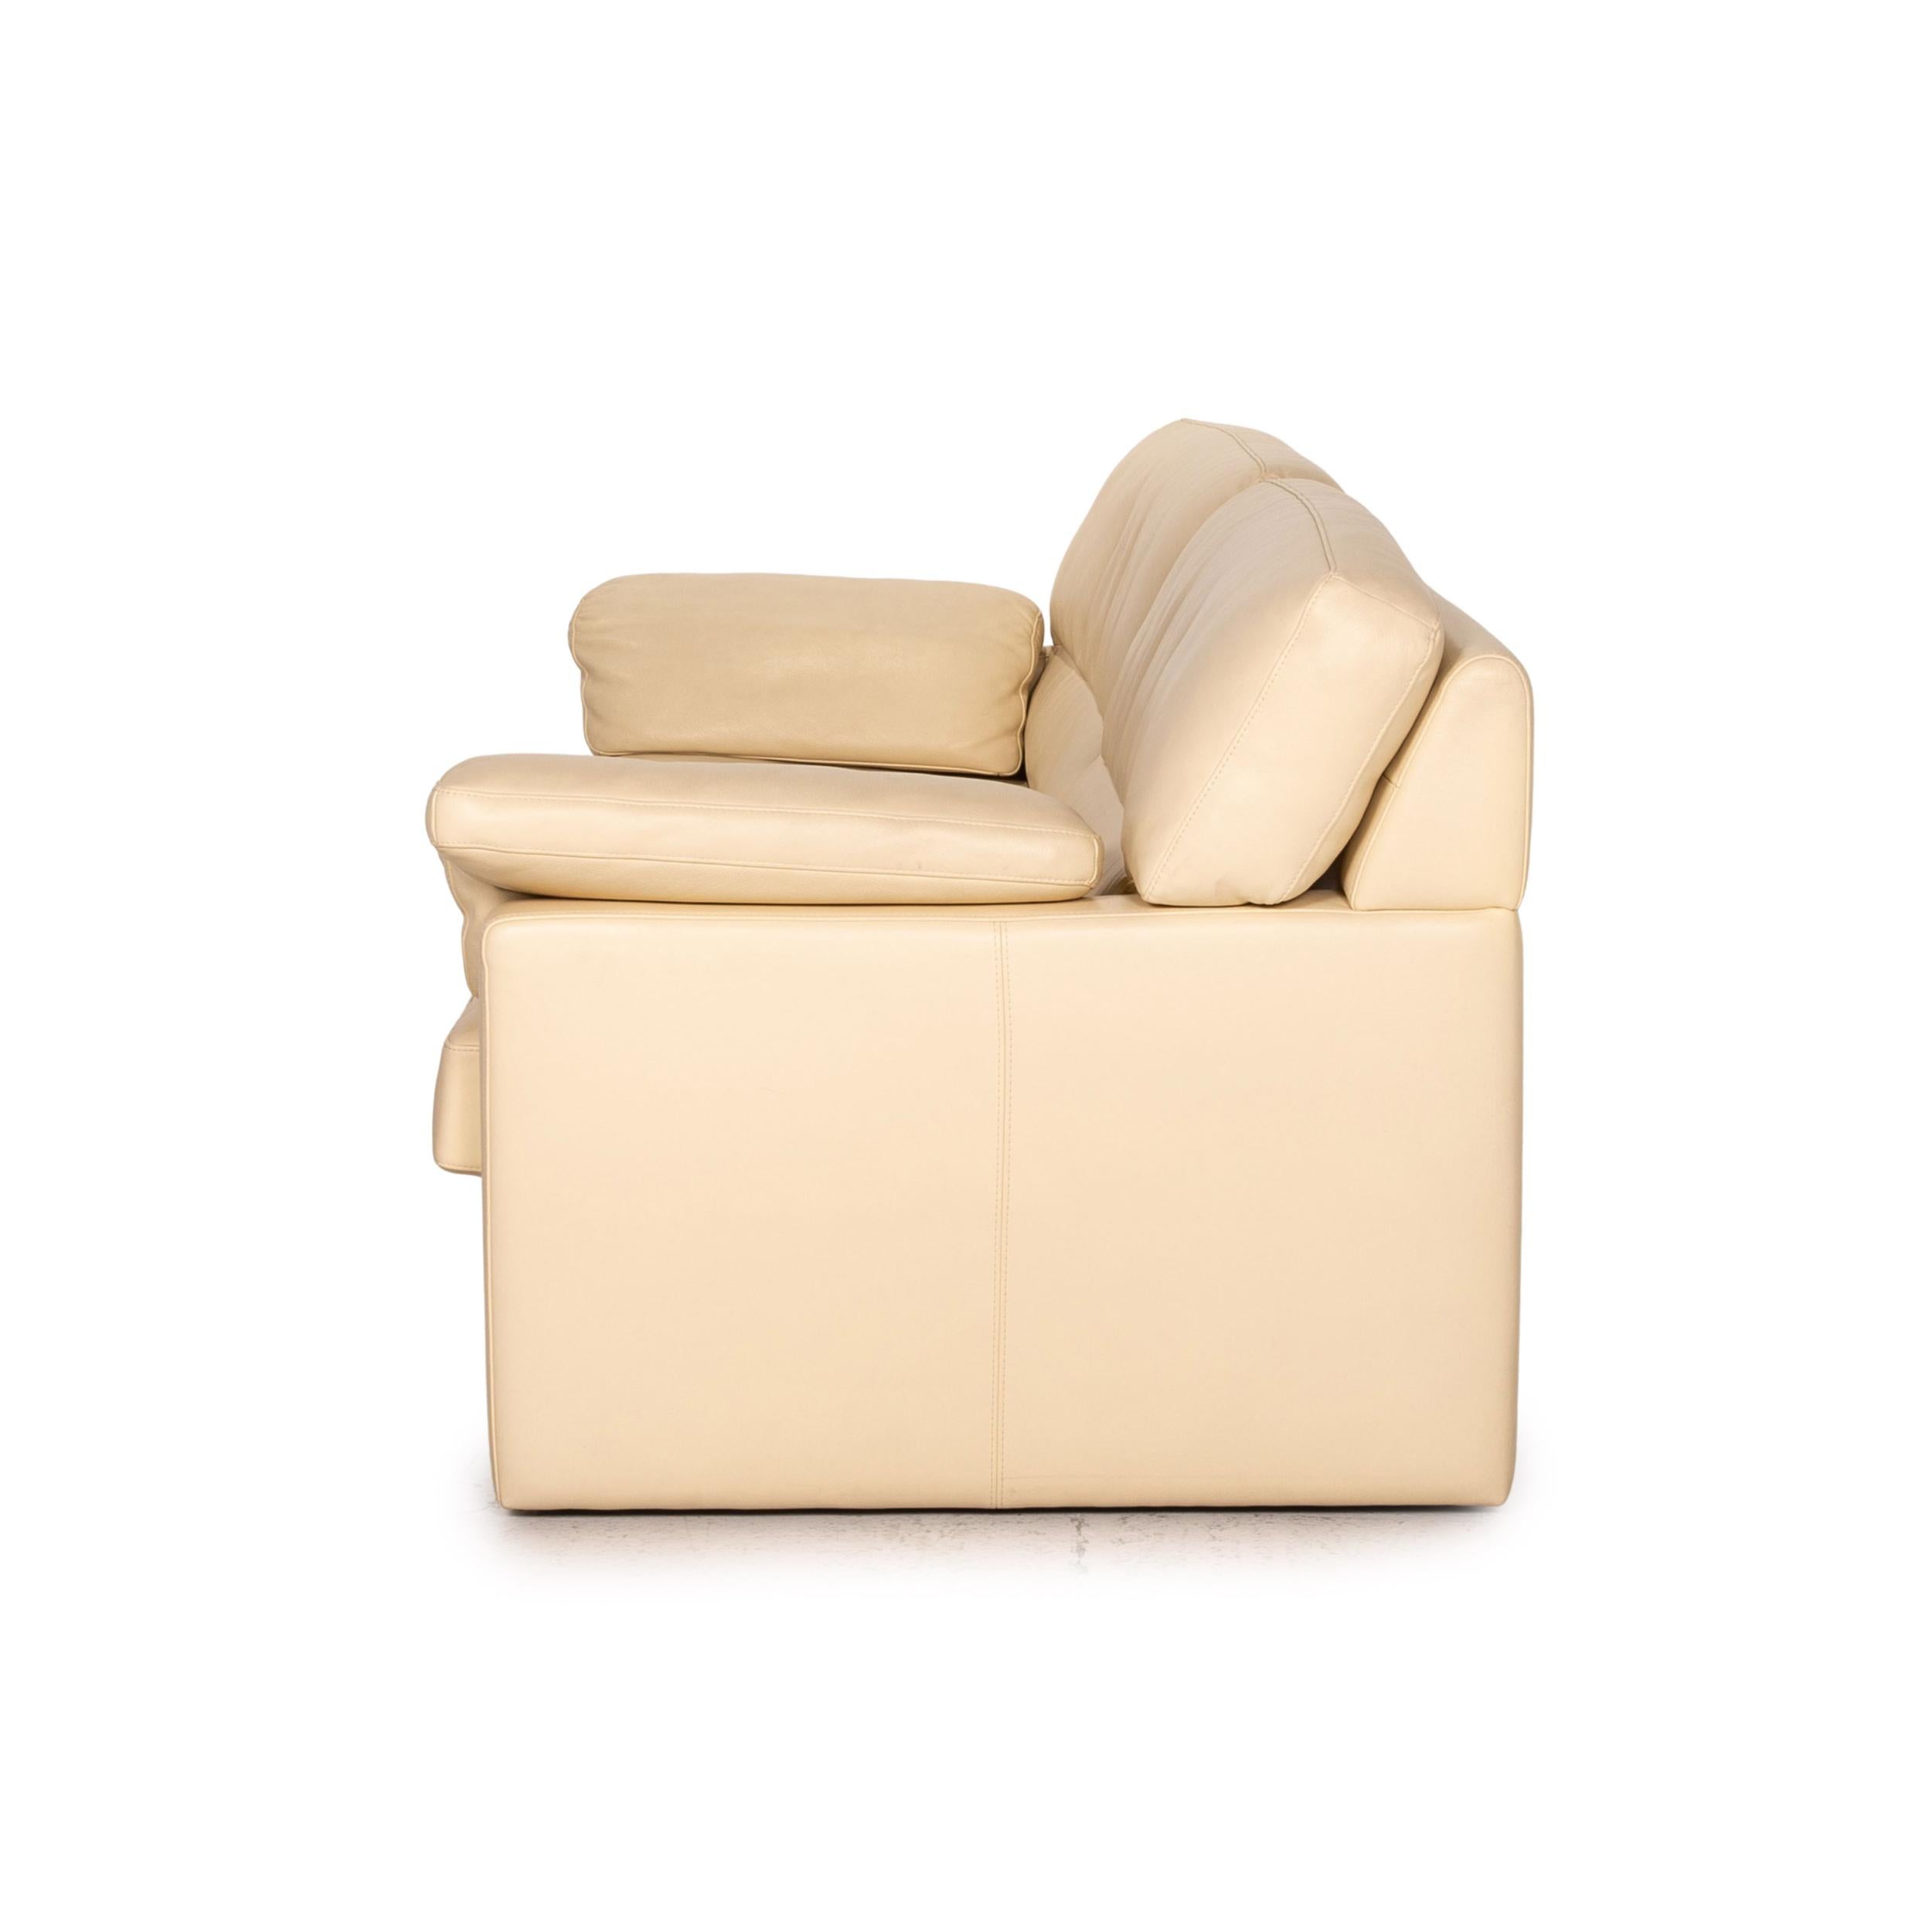 Bielefelder Werkstätten Leather Sofa Cream Three-Seater Couch For Sale 4